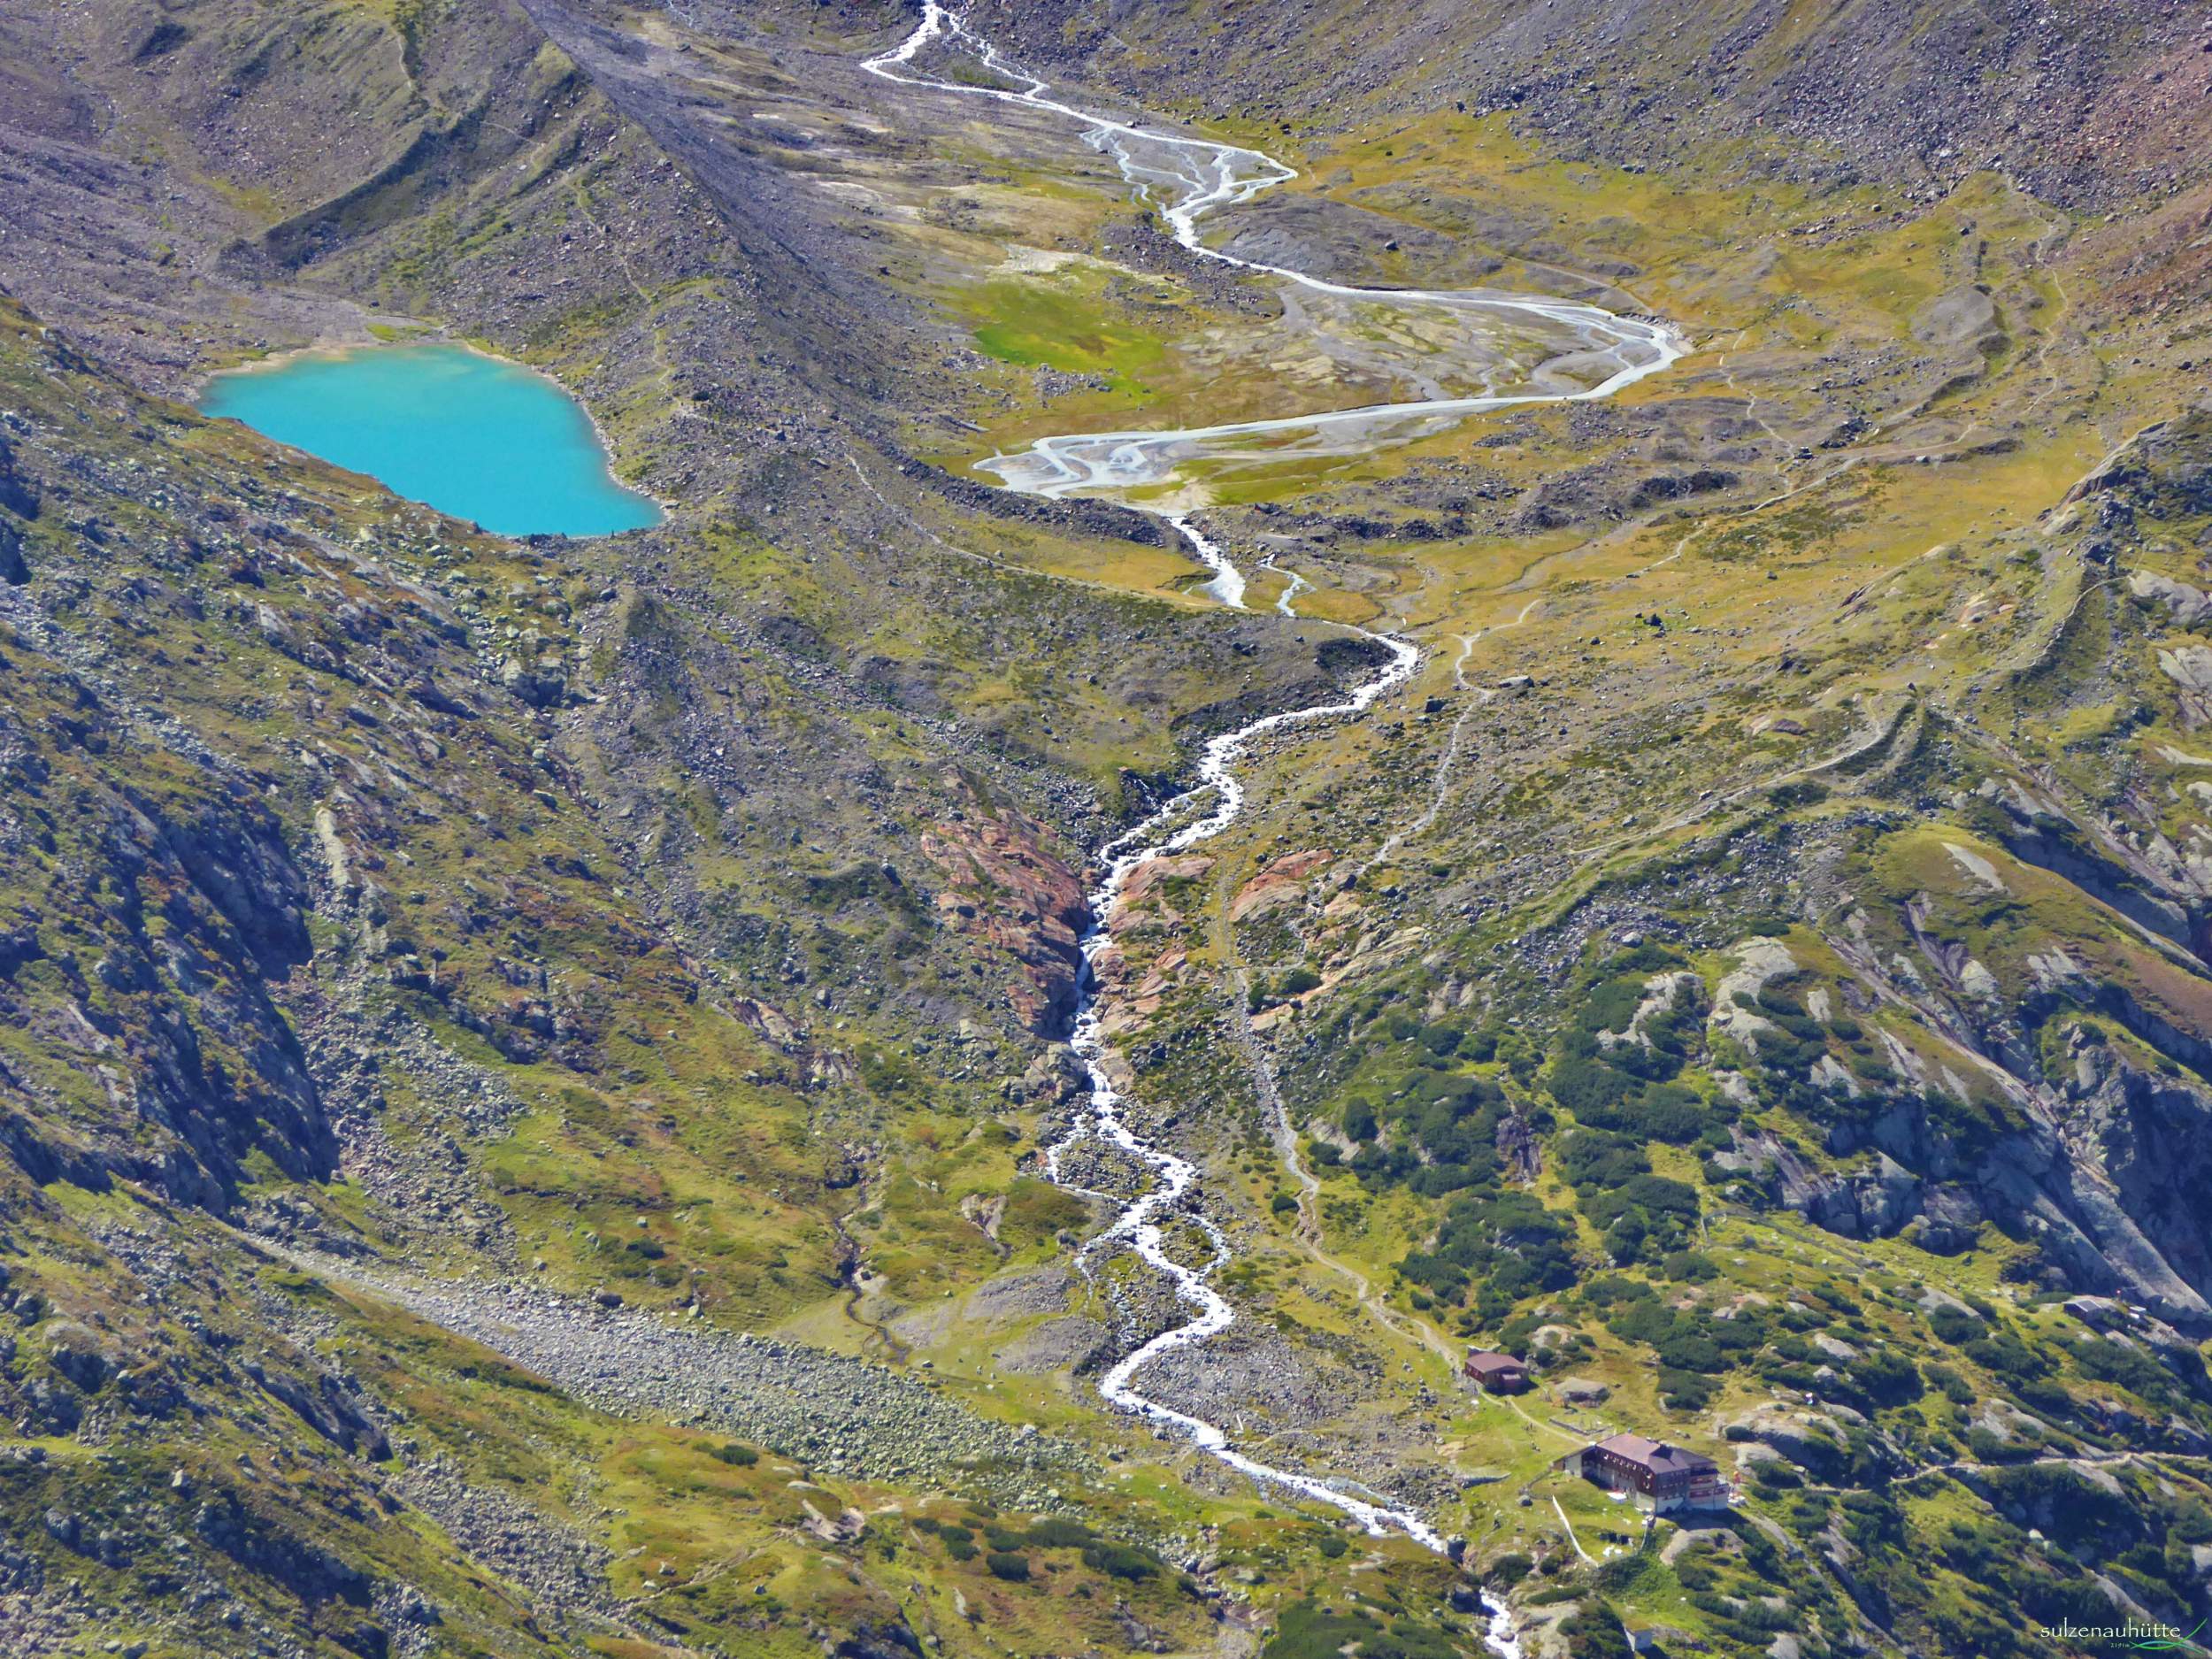 Blaue Lacke - Sulzenauhütte - Stubaier Höhenweg